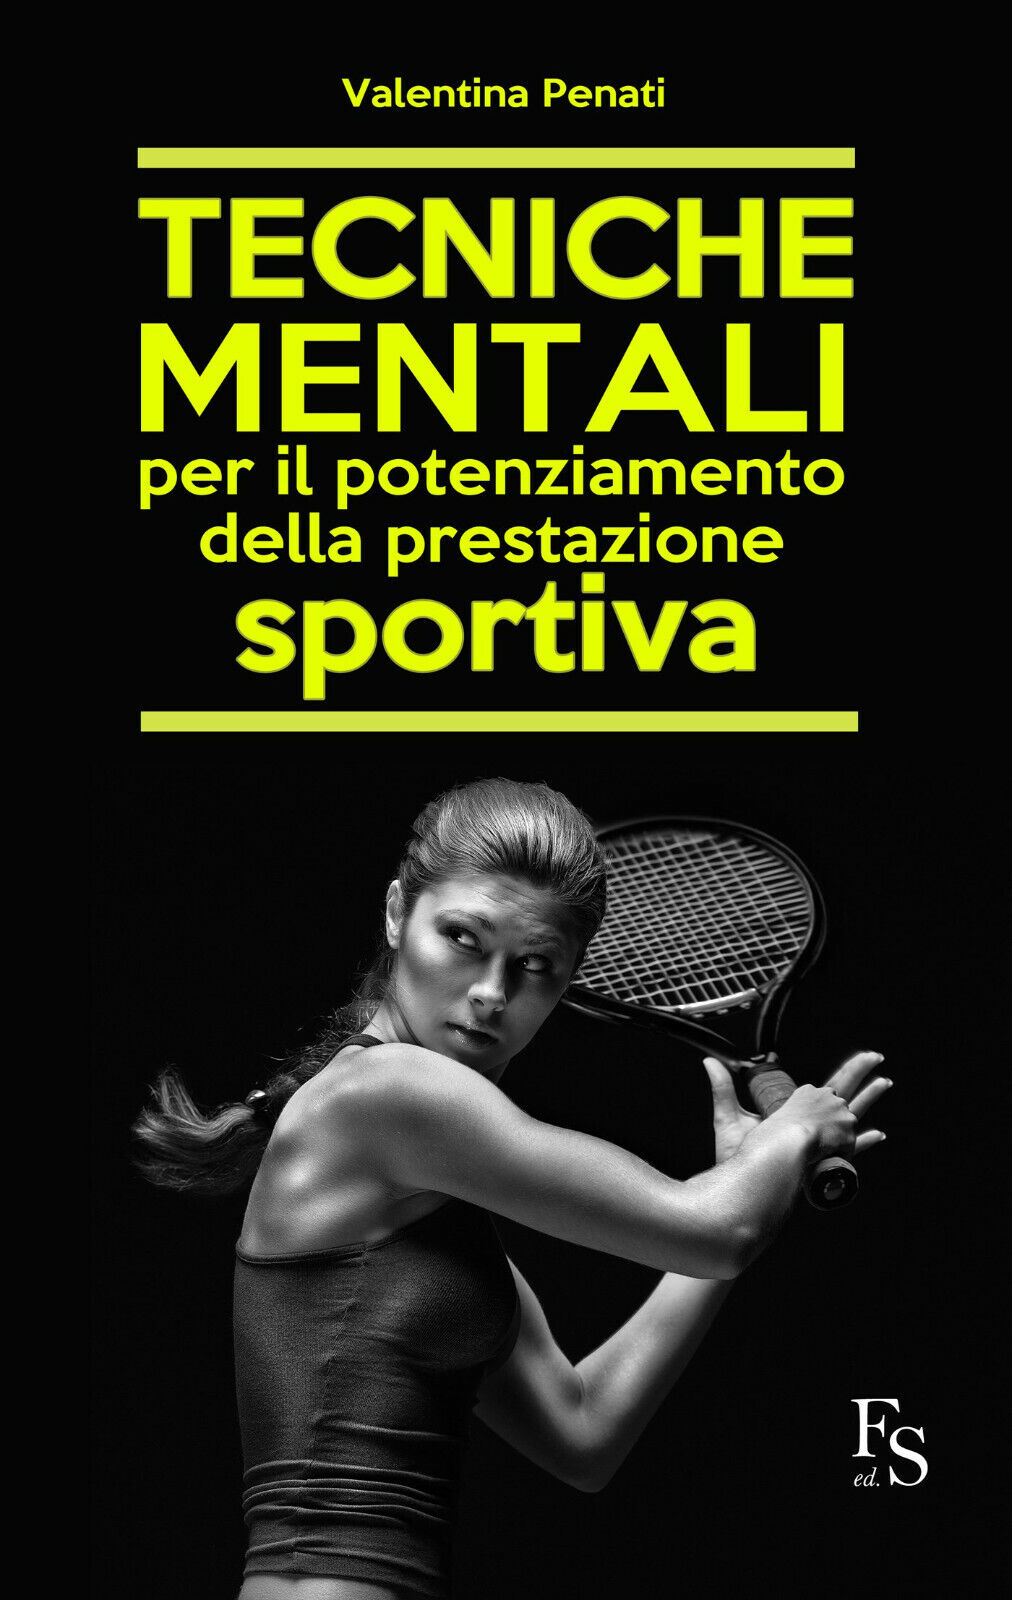 Tecniche mentali per il potenziamento della prestazione sportiva - Penati, 2015